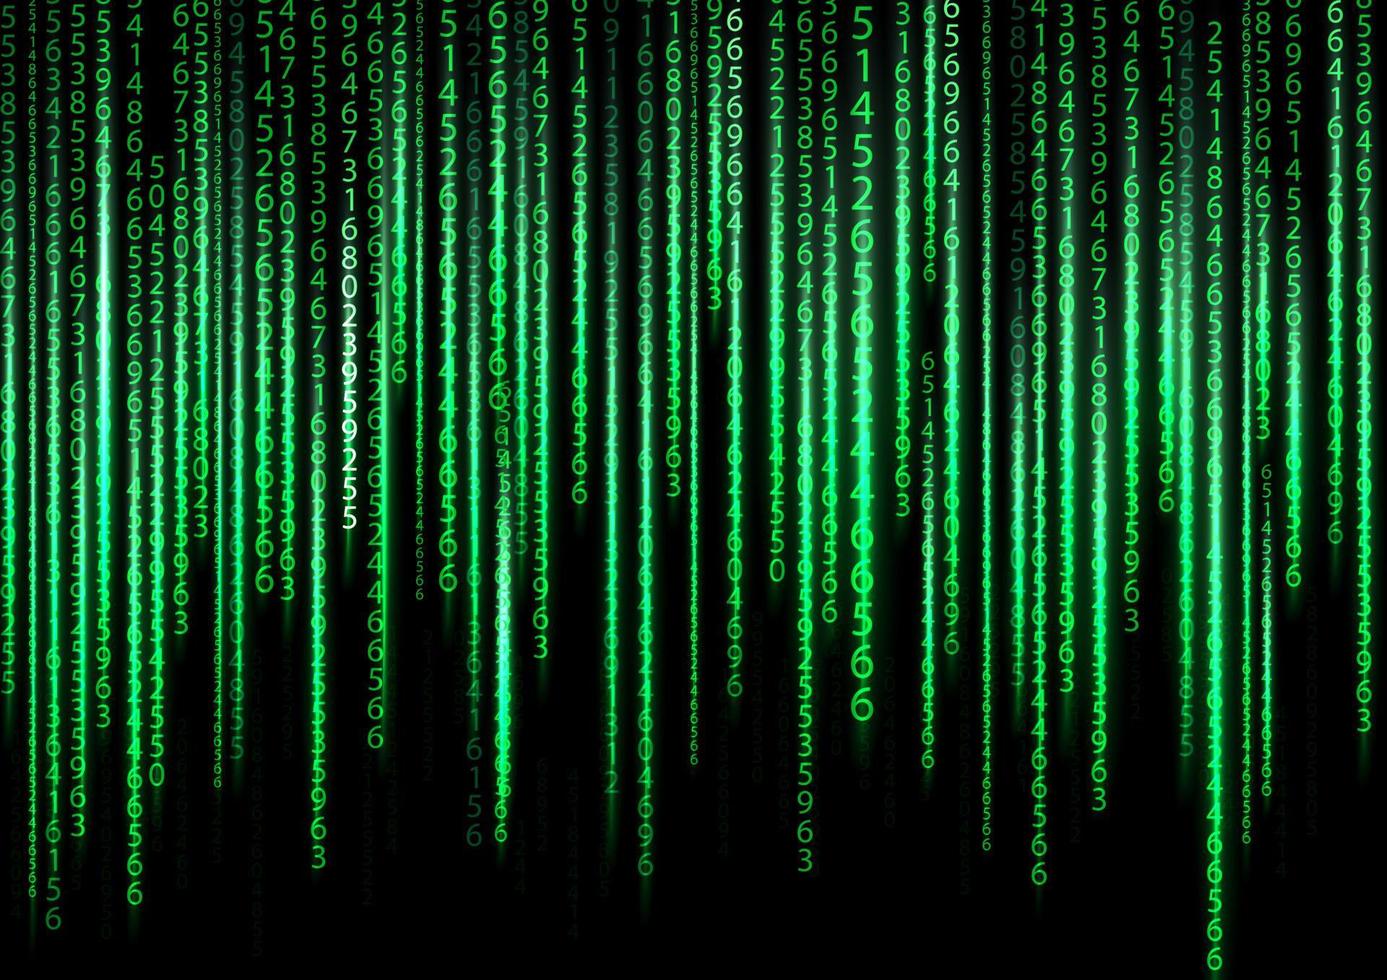 Technologie binärer Hintergrund. Binär auf grünem Hintergrund vektor